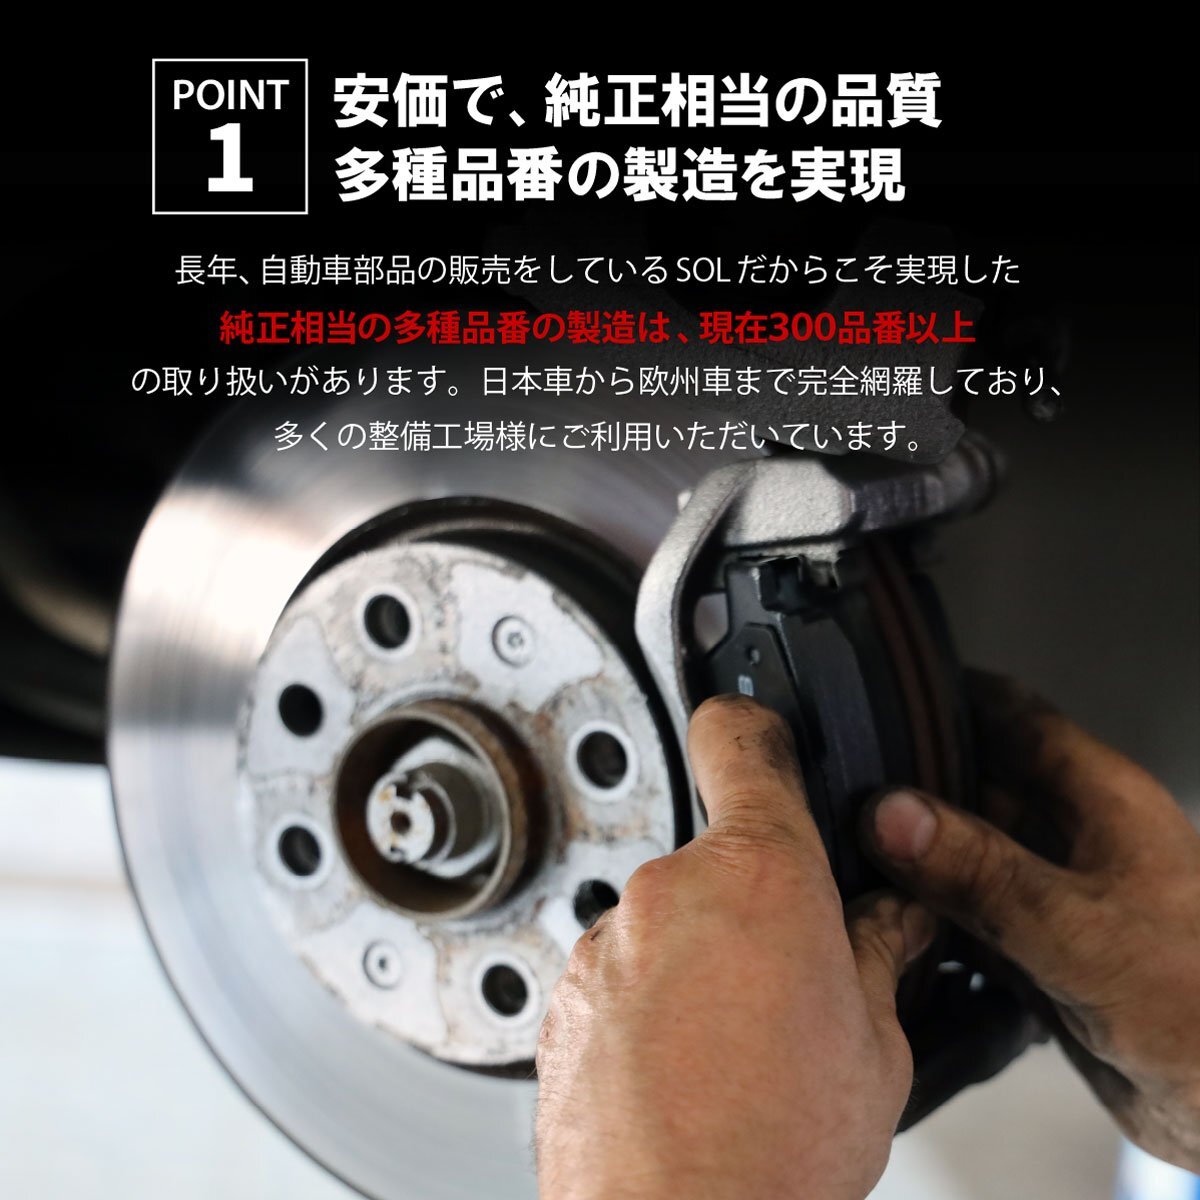  Toyota Sienta NCP81G NCP85G передние тормозные накладки левый и правый в комплекте отгрузка конечный срок 18 час марка машины особый дизайн 04465-52100 04465-12580 04465-12581